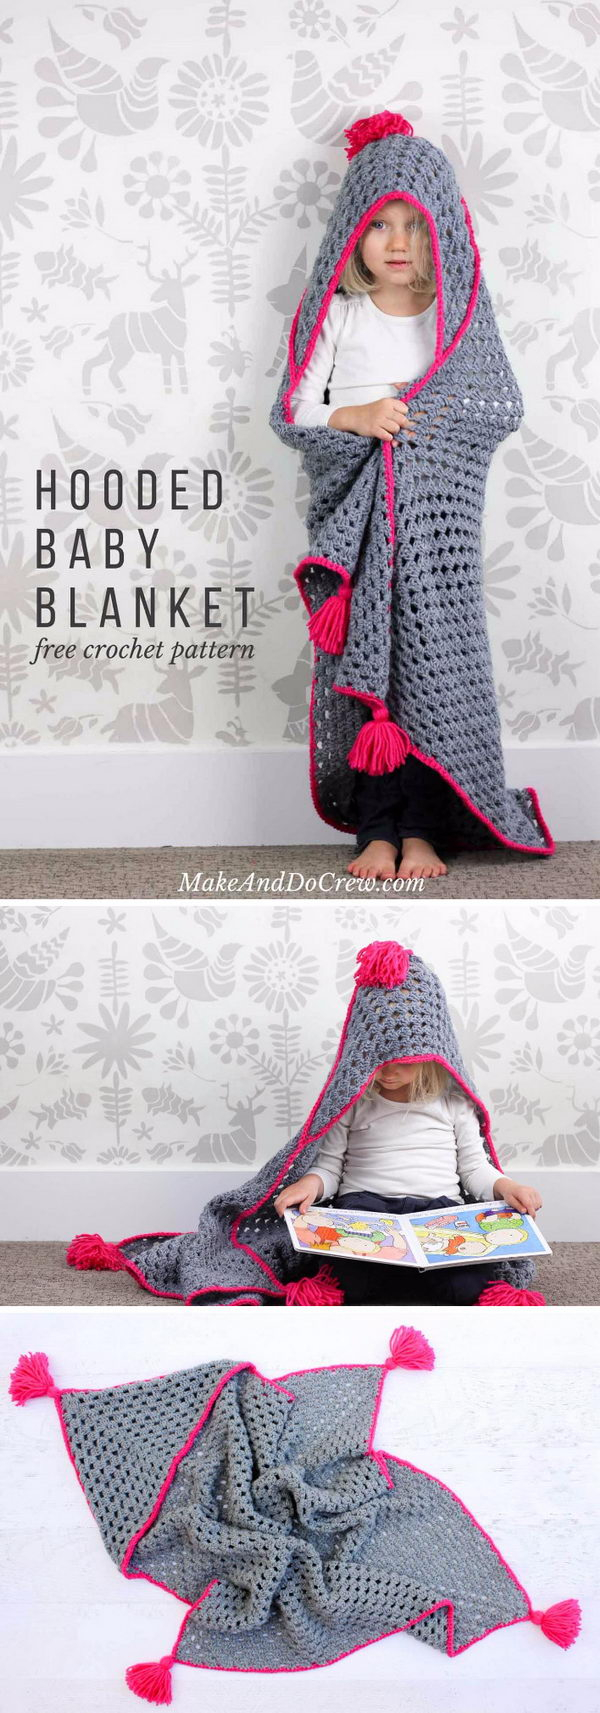 Sock Monkey Afghan Crochet Pattern Free 15 Crochet Hooded Blanket Ideas 2017